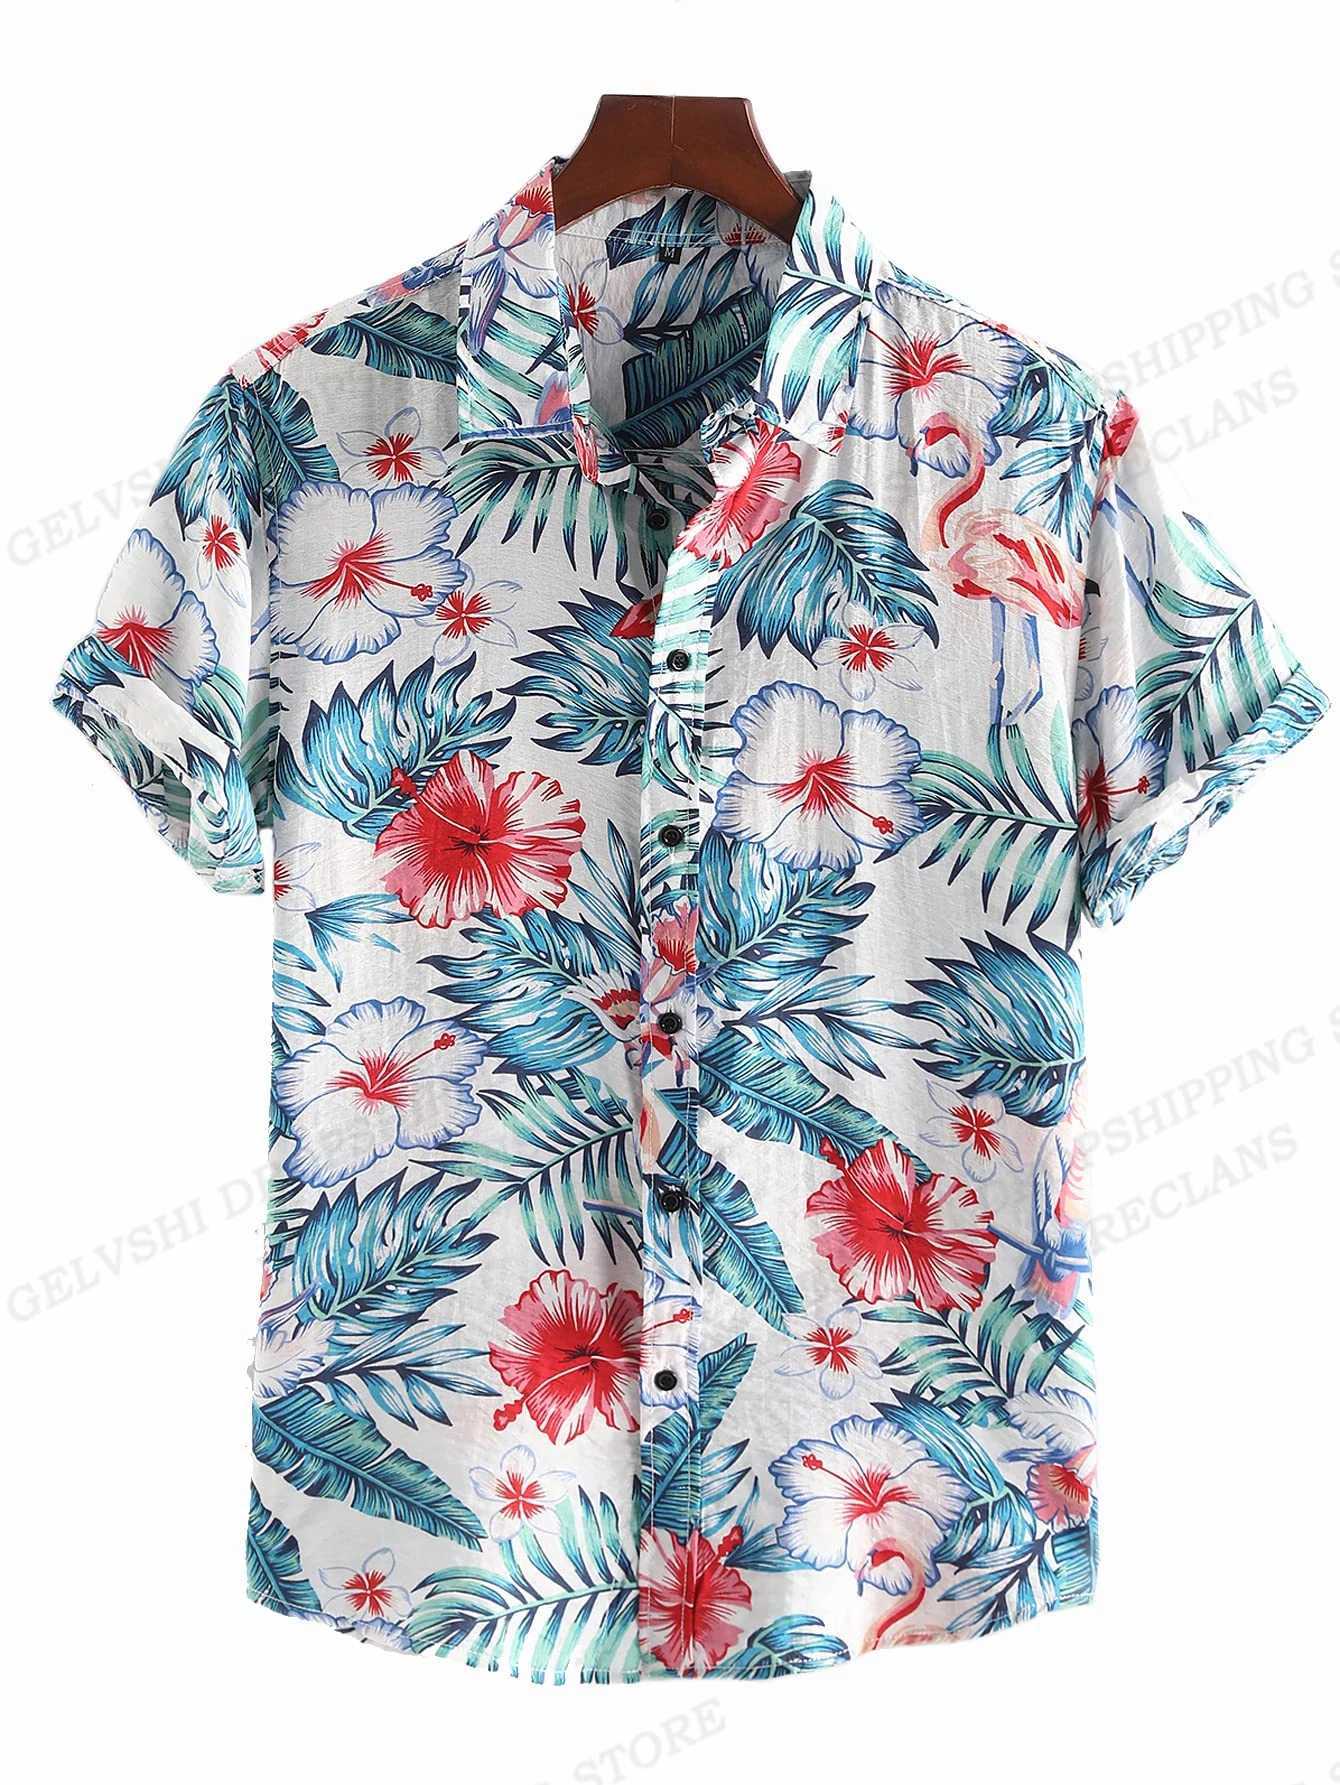 Camicie casual maschile camicie floreali camicie di moda camicie hawaian cambal vocation blouse cuba lapel camicia gira-down-down aloha maschile abbigliamento 2449